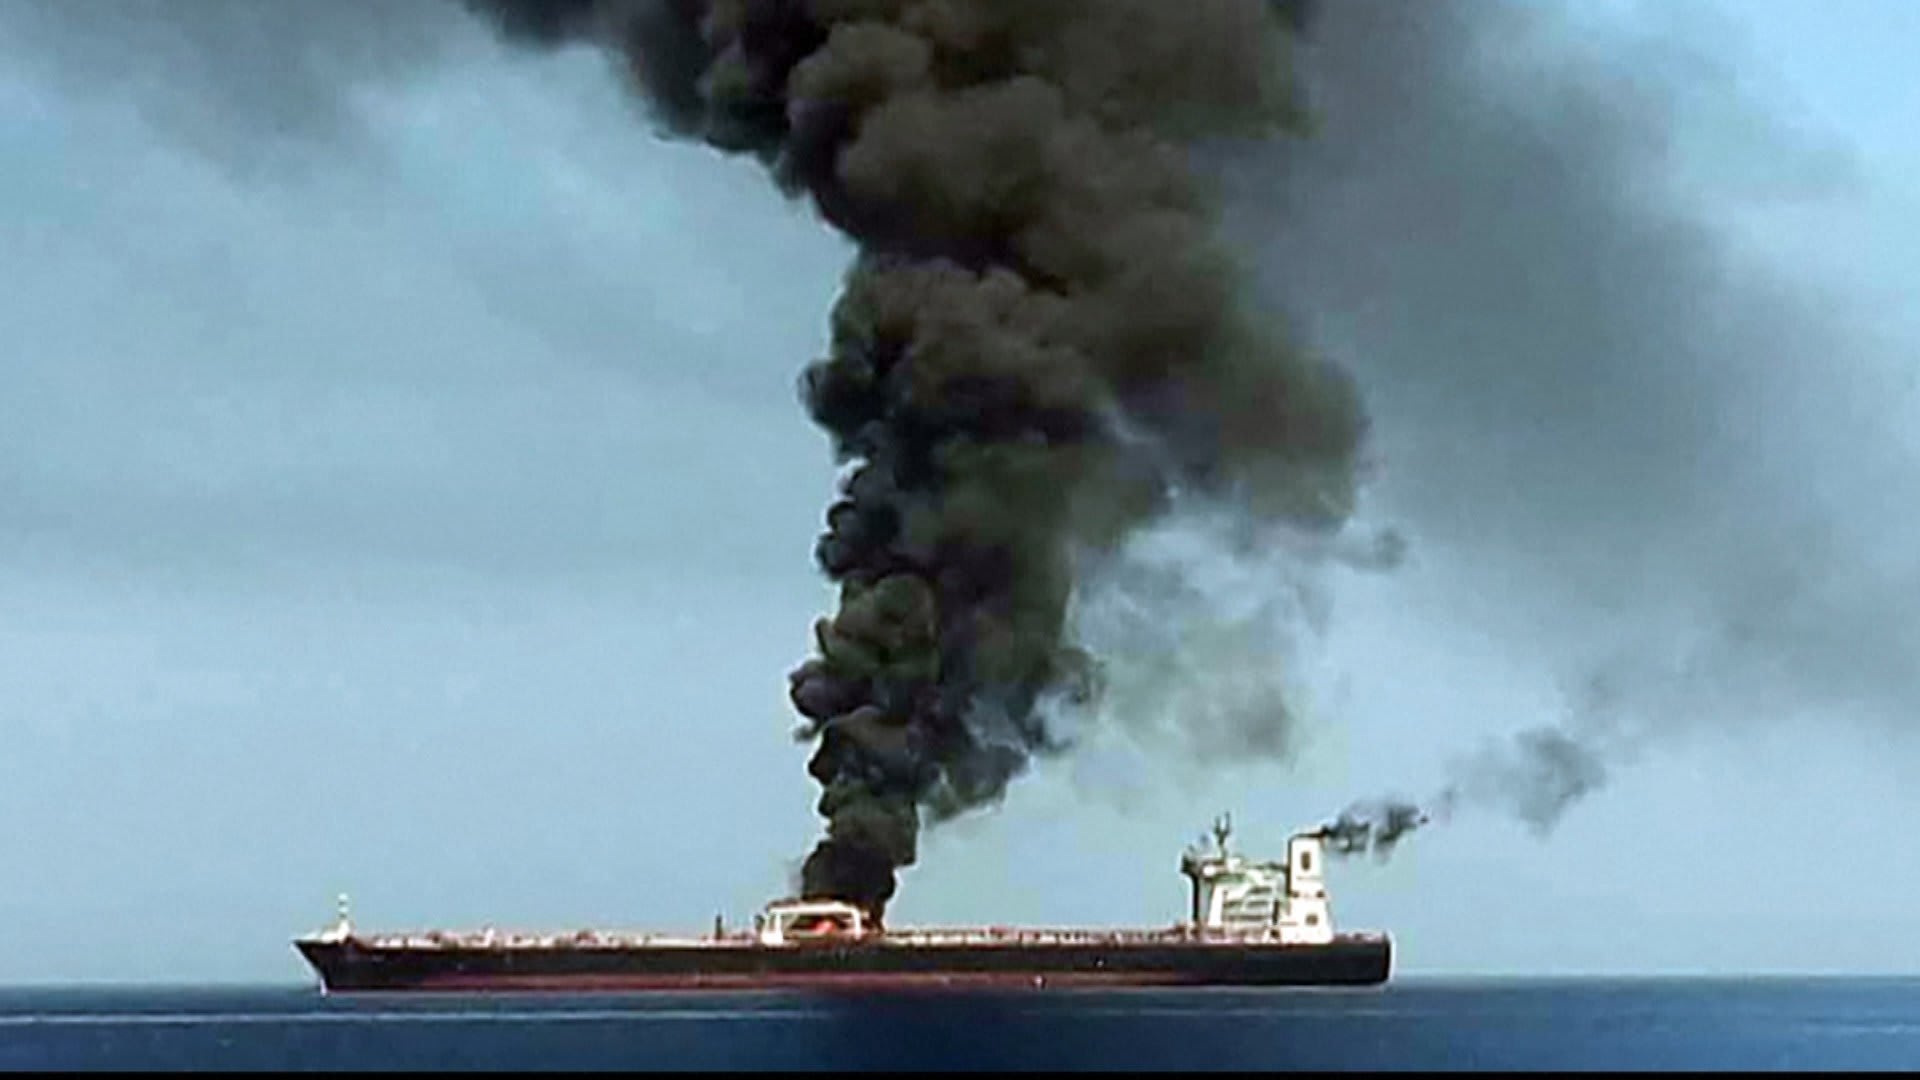 إيران تبث فيديو لنيران مشتعلة بإحدى السفينتين في خليج عمان